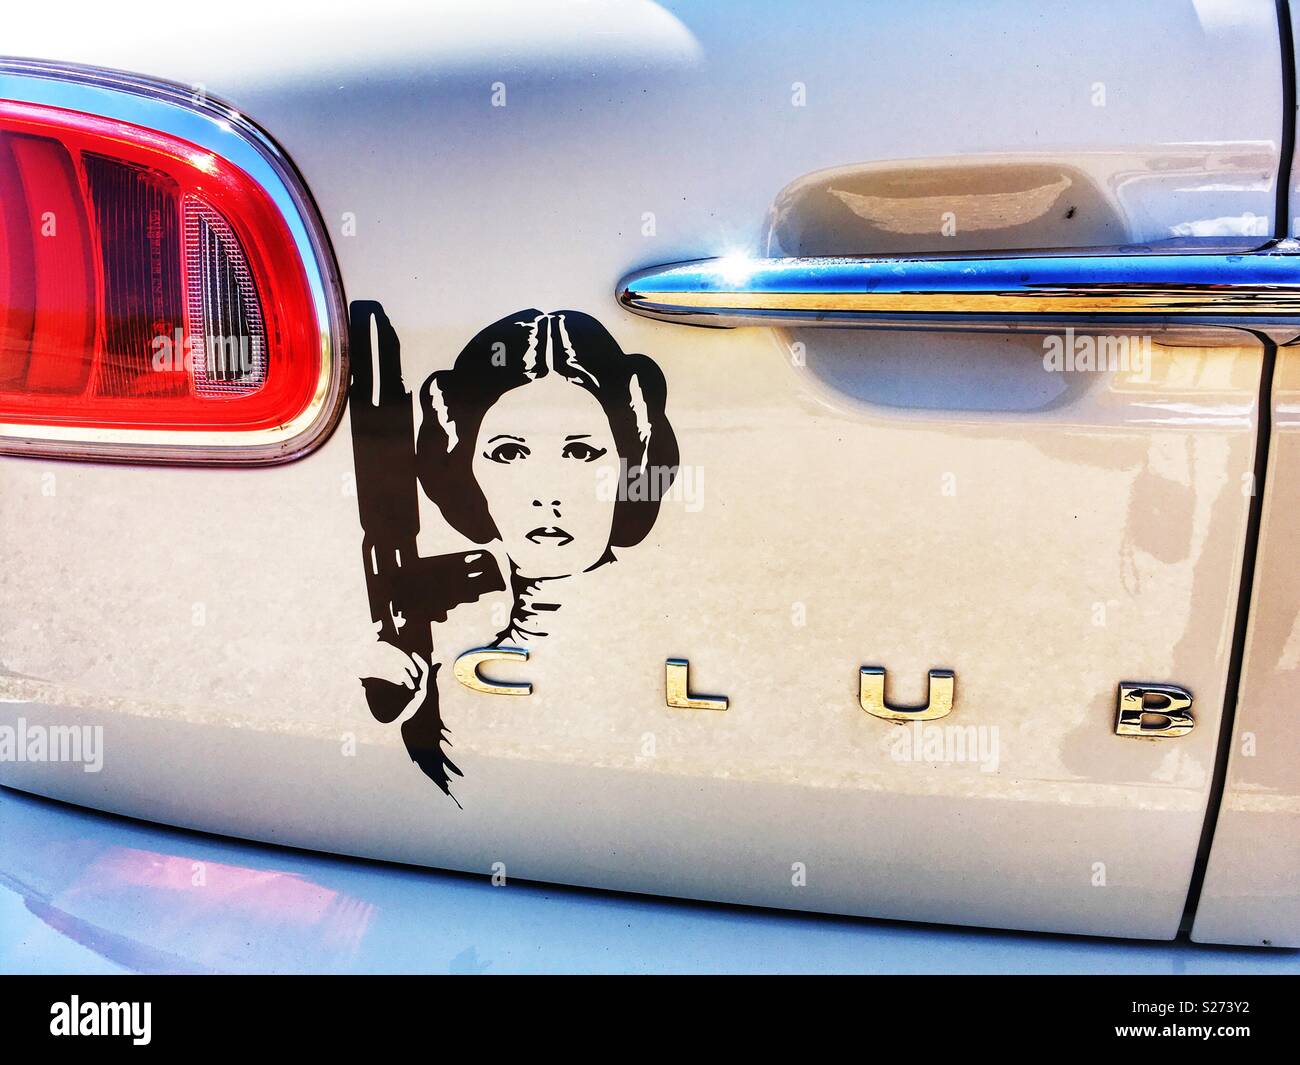 Princess Leia sticker on a Mini Clubman car Stock Photo